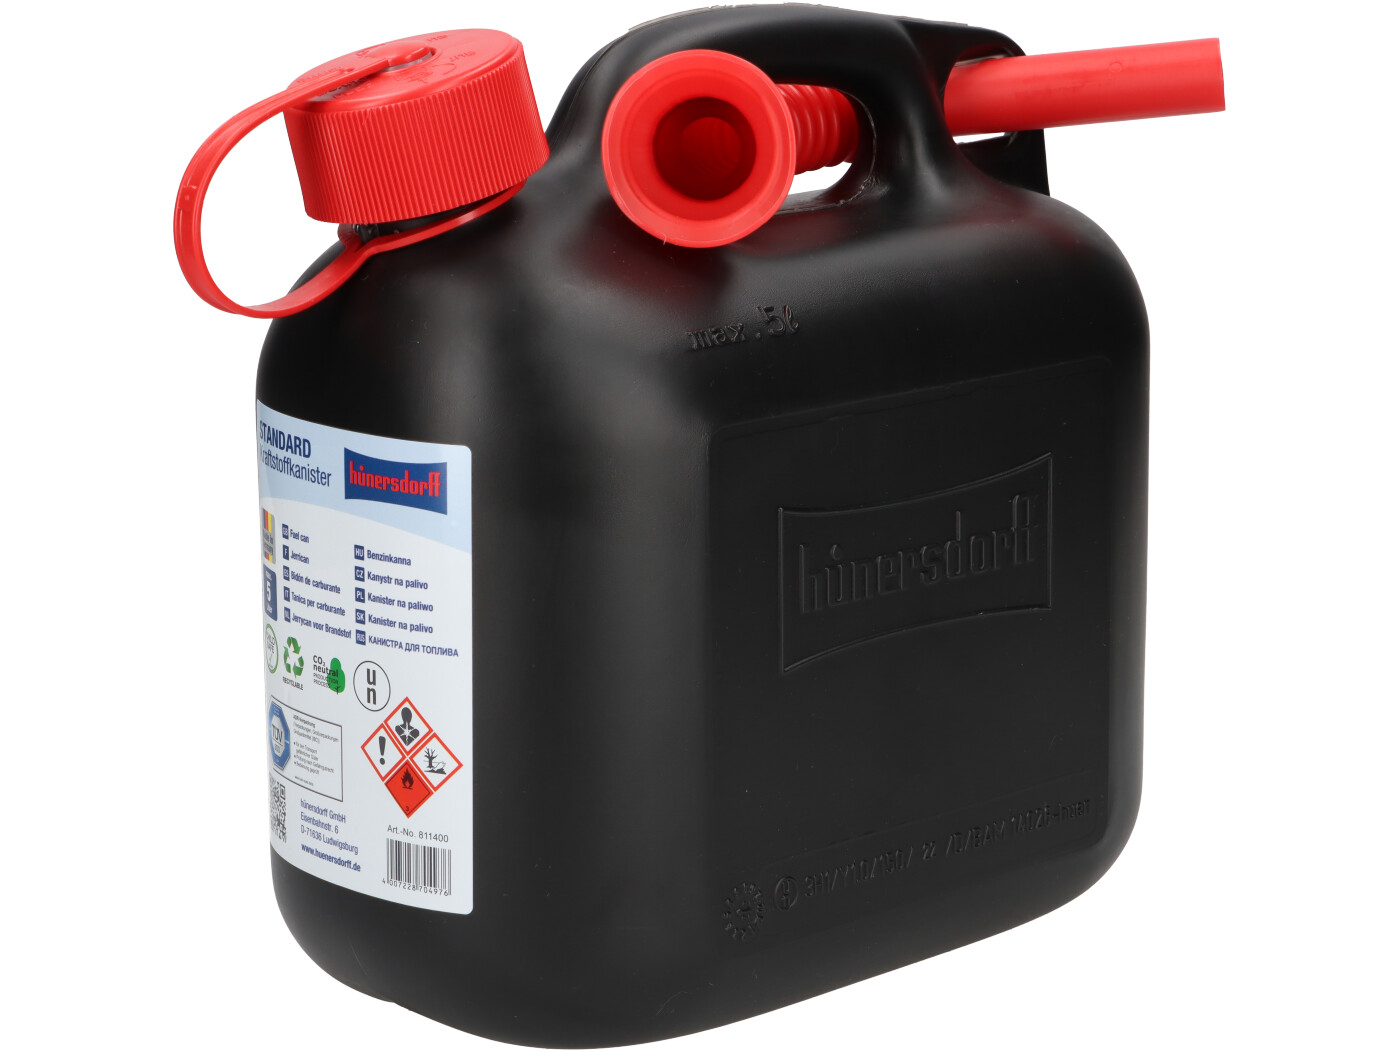 Benzinkanister 5 Liter - UN-geprüft 670 gramm schwarz/Gelb mit Ausgießer 